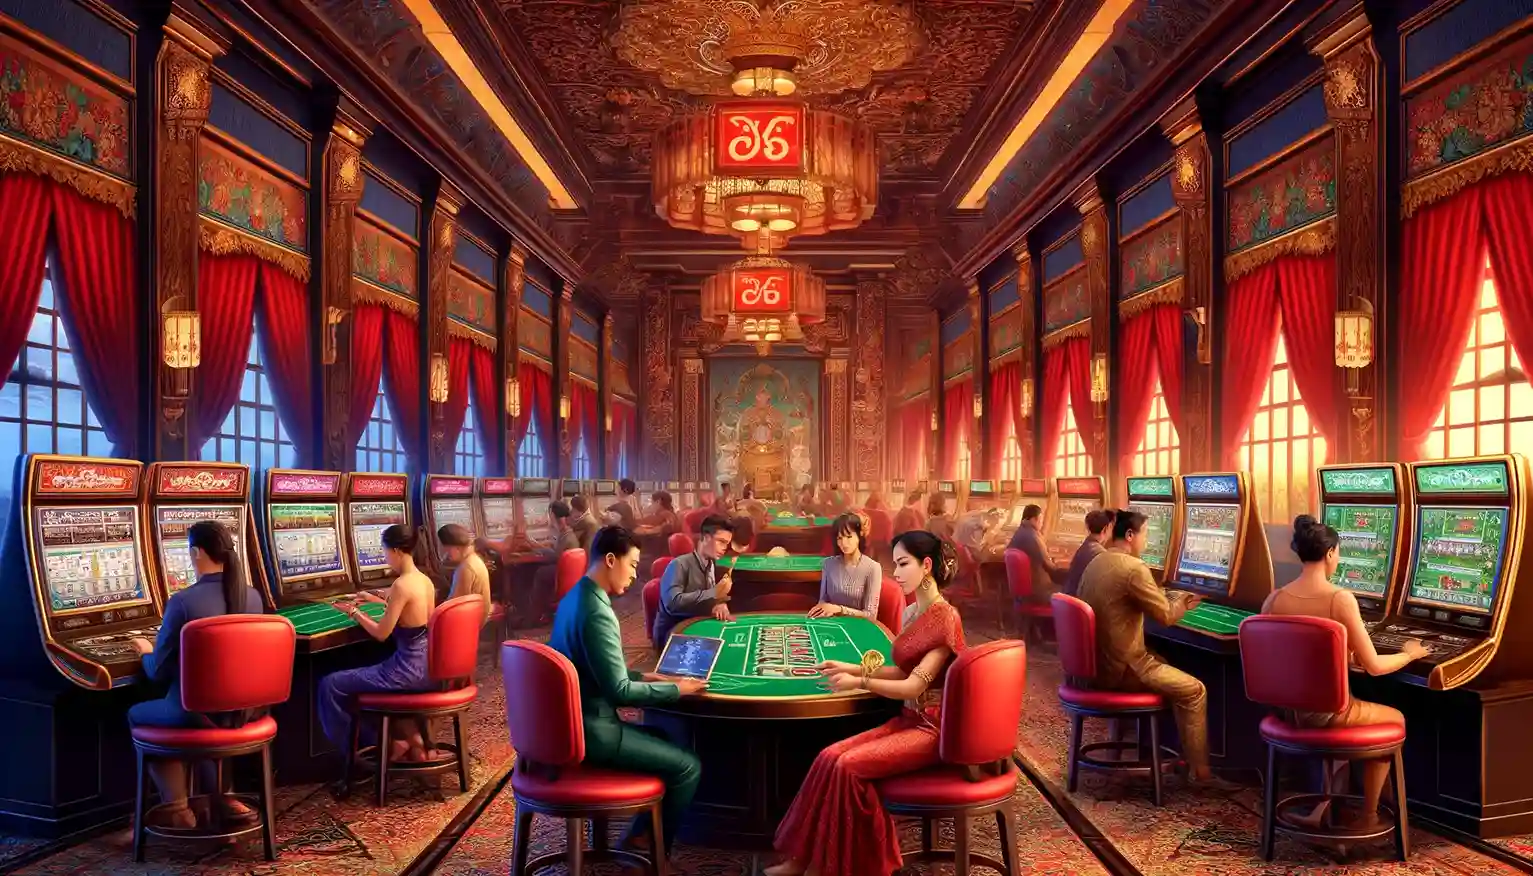 Thailand casino online